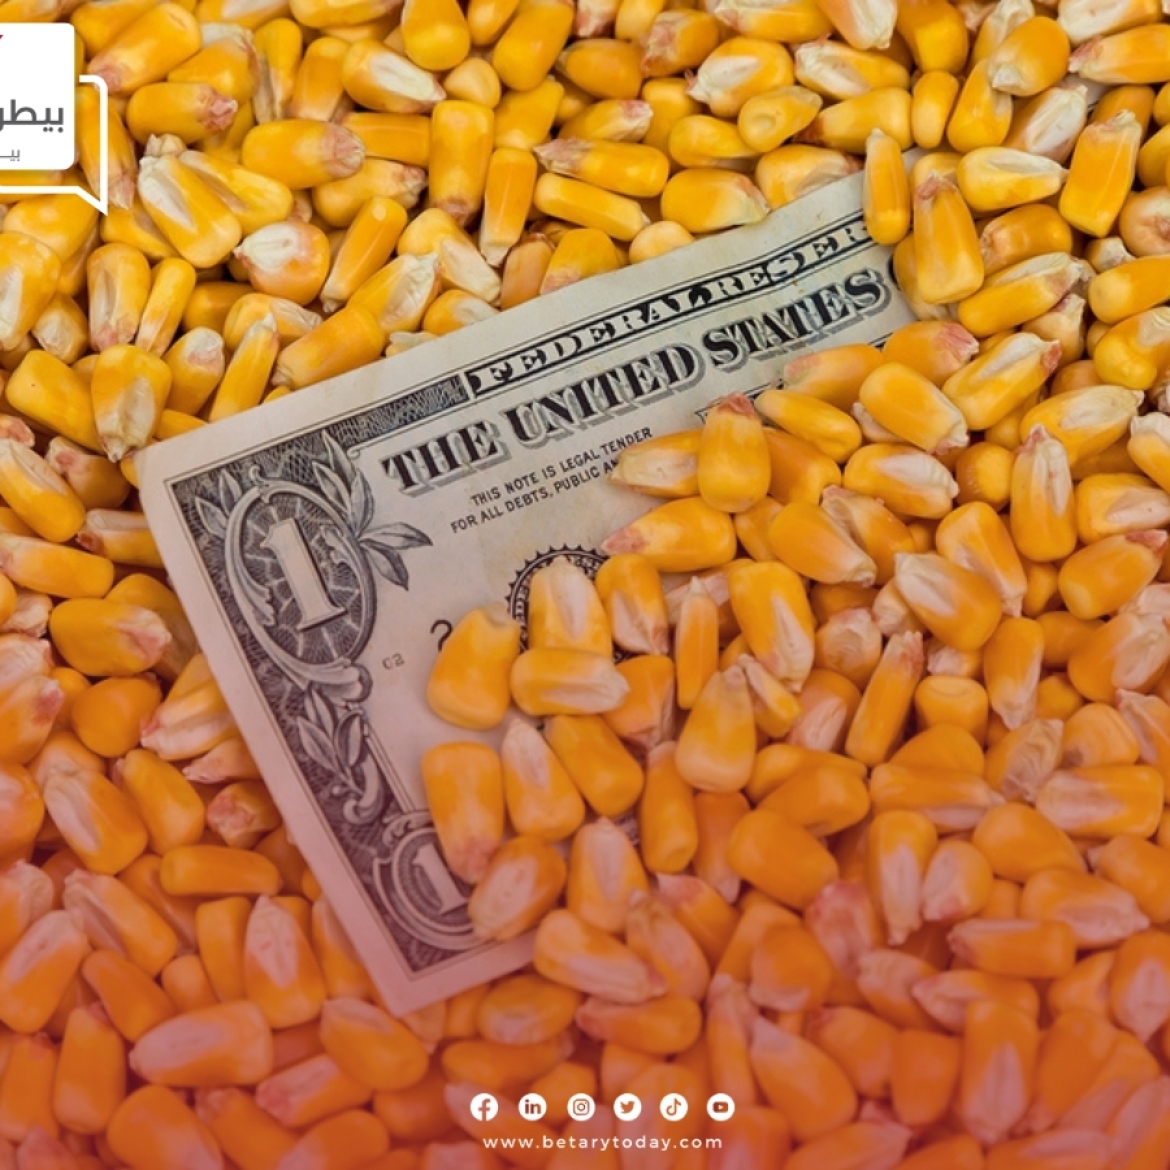 تراجع جديد في أسعار الذرة الصفراء وفول الصويا اليوم الأربعاء في الأسواق